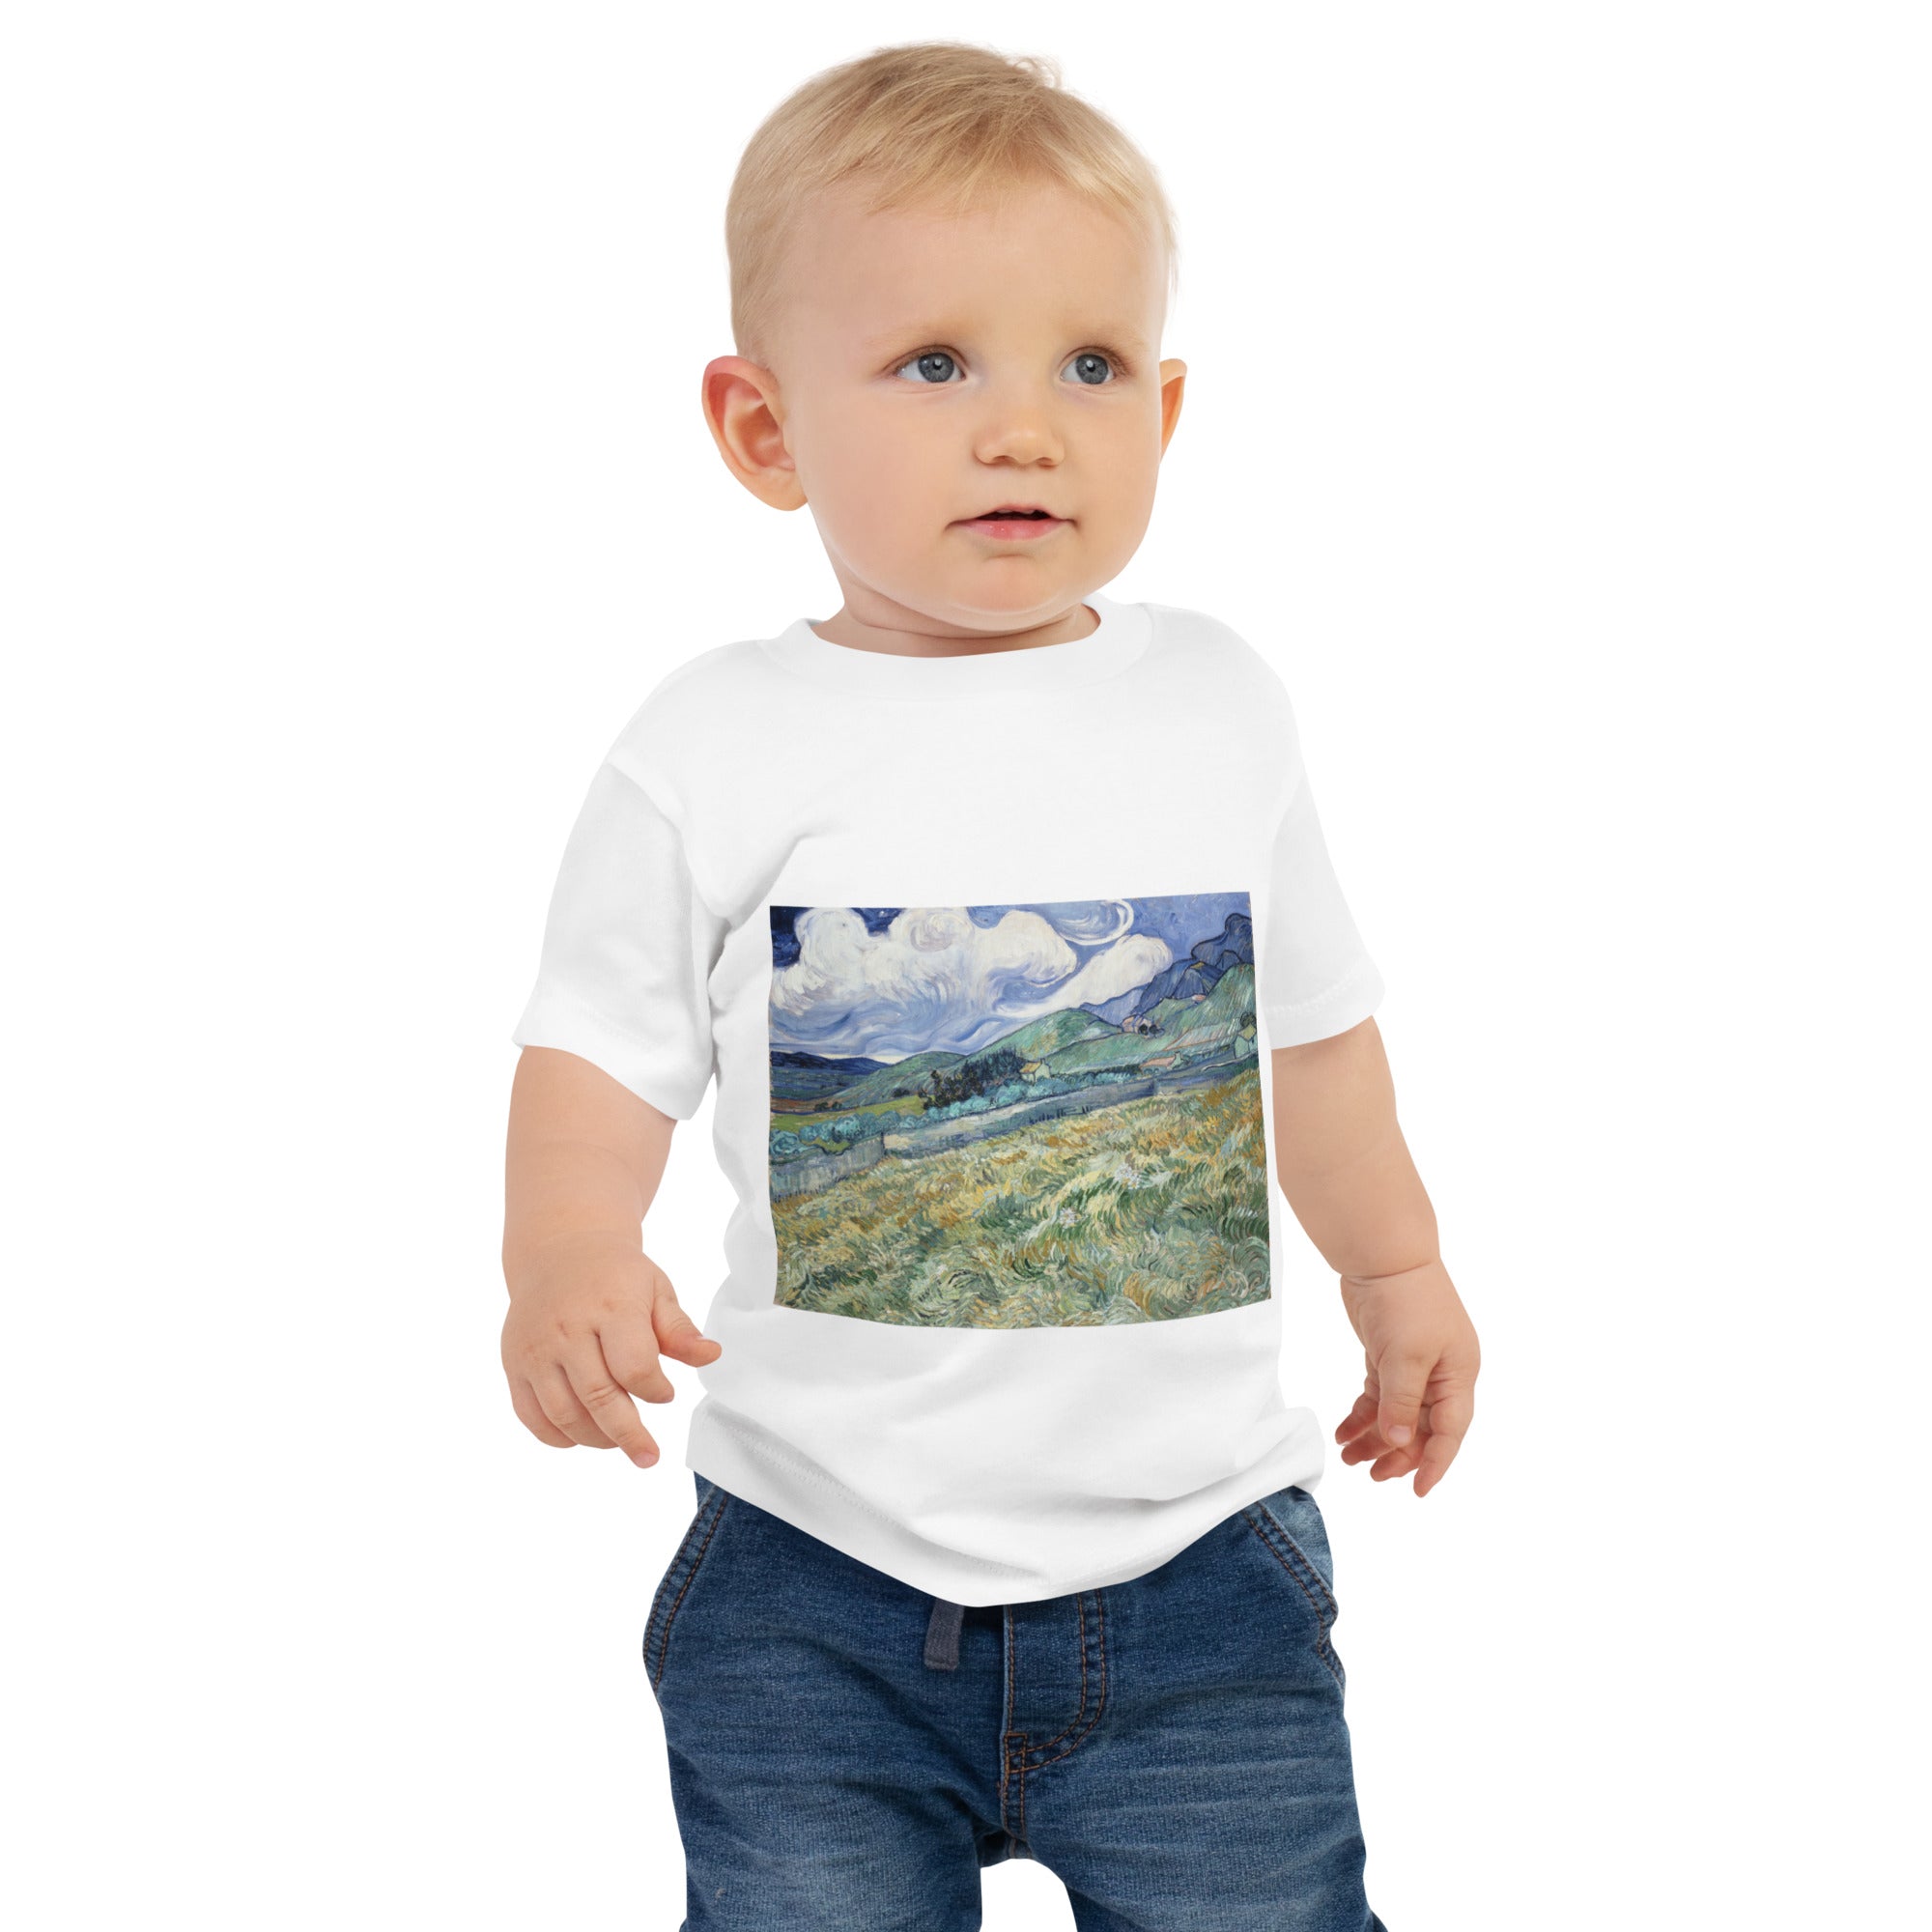 Vincent van Gogh 'Landscape from Saint-Rémy' Famous Painting Baby Staple T-Shirt | Premium Baby Art Tee